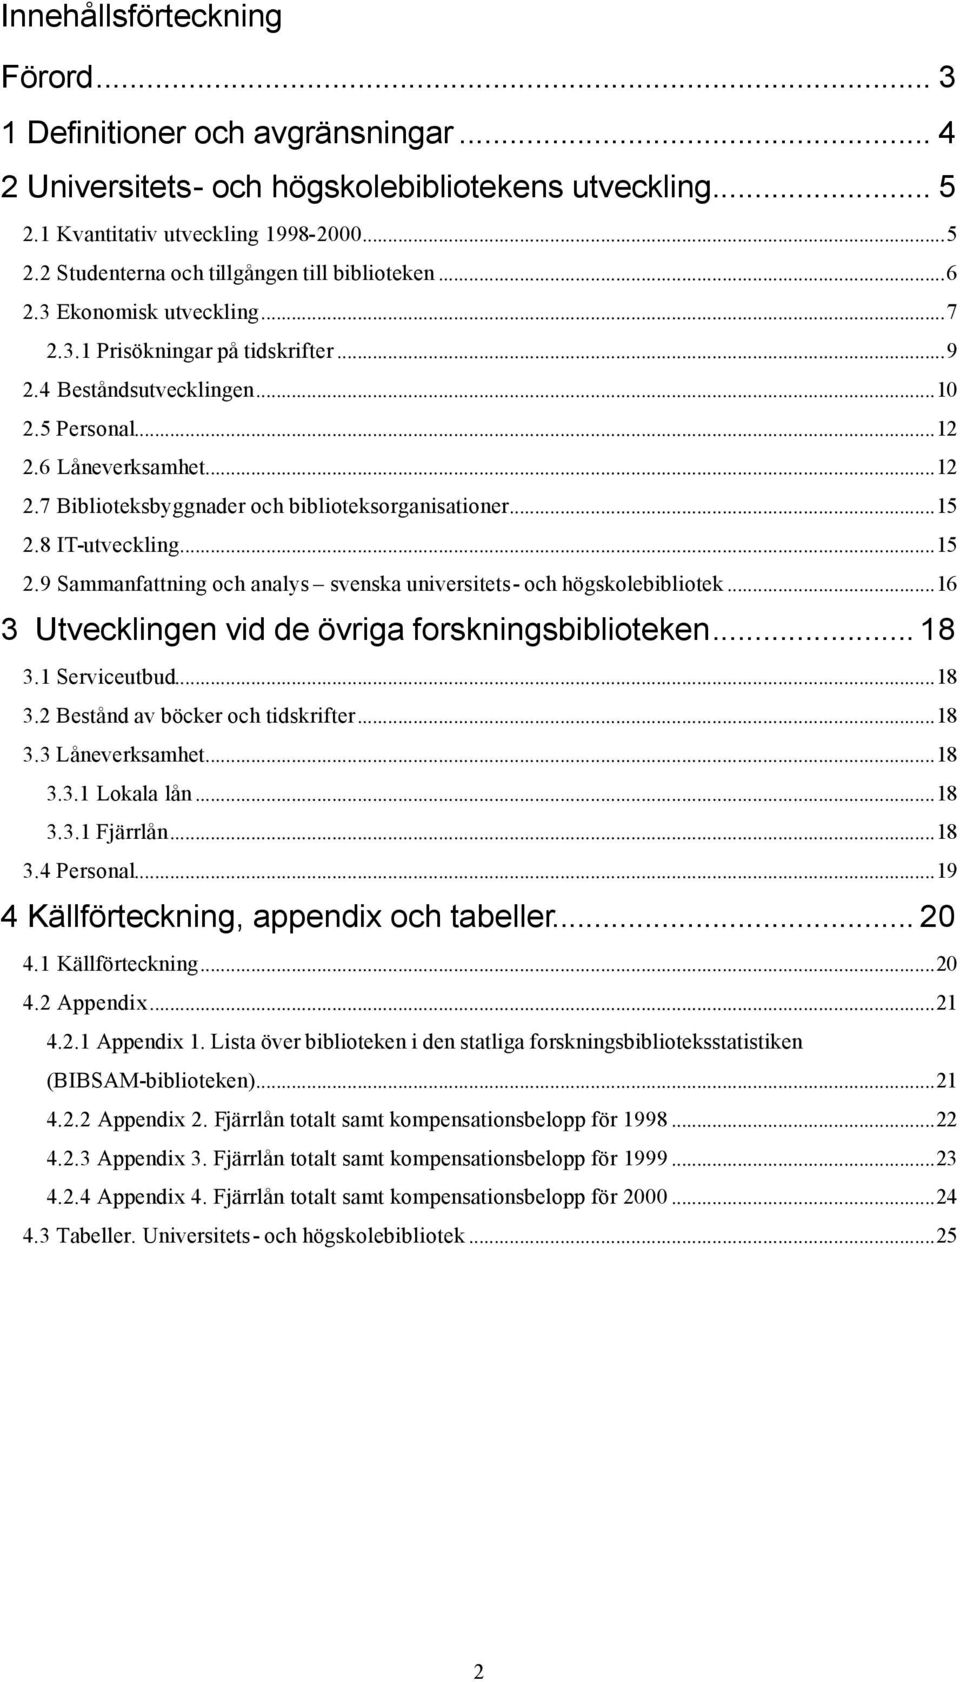 ..15 2.8 IT-utveckling...15 2.9 Sammanfattning och analys svenska universitets- och högskolebibliotek...16 3 Utvecklingen vid de övriga forskningsbiblioteken... 18 3.